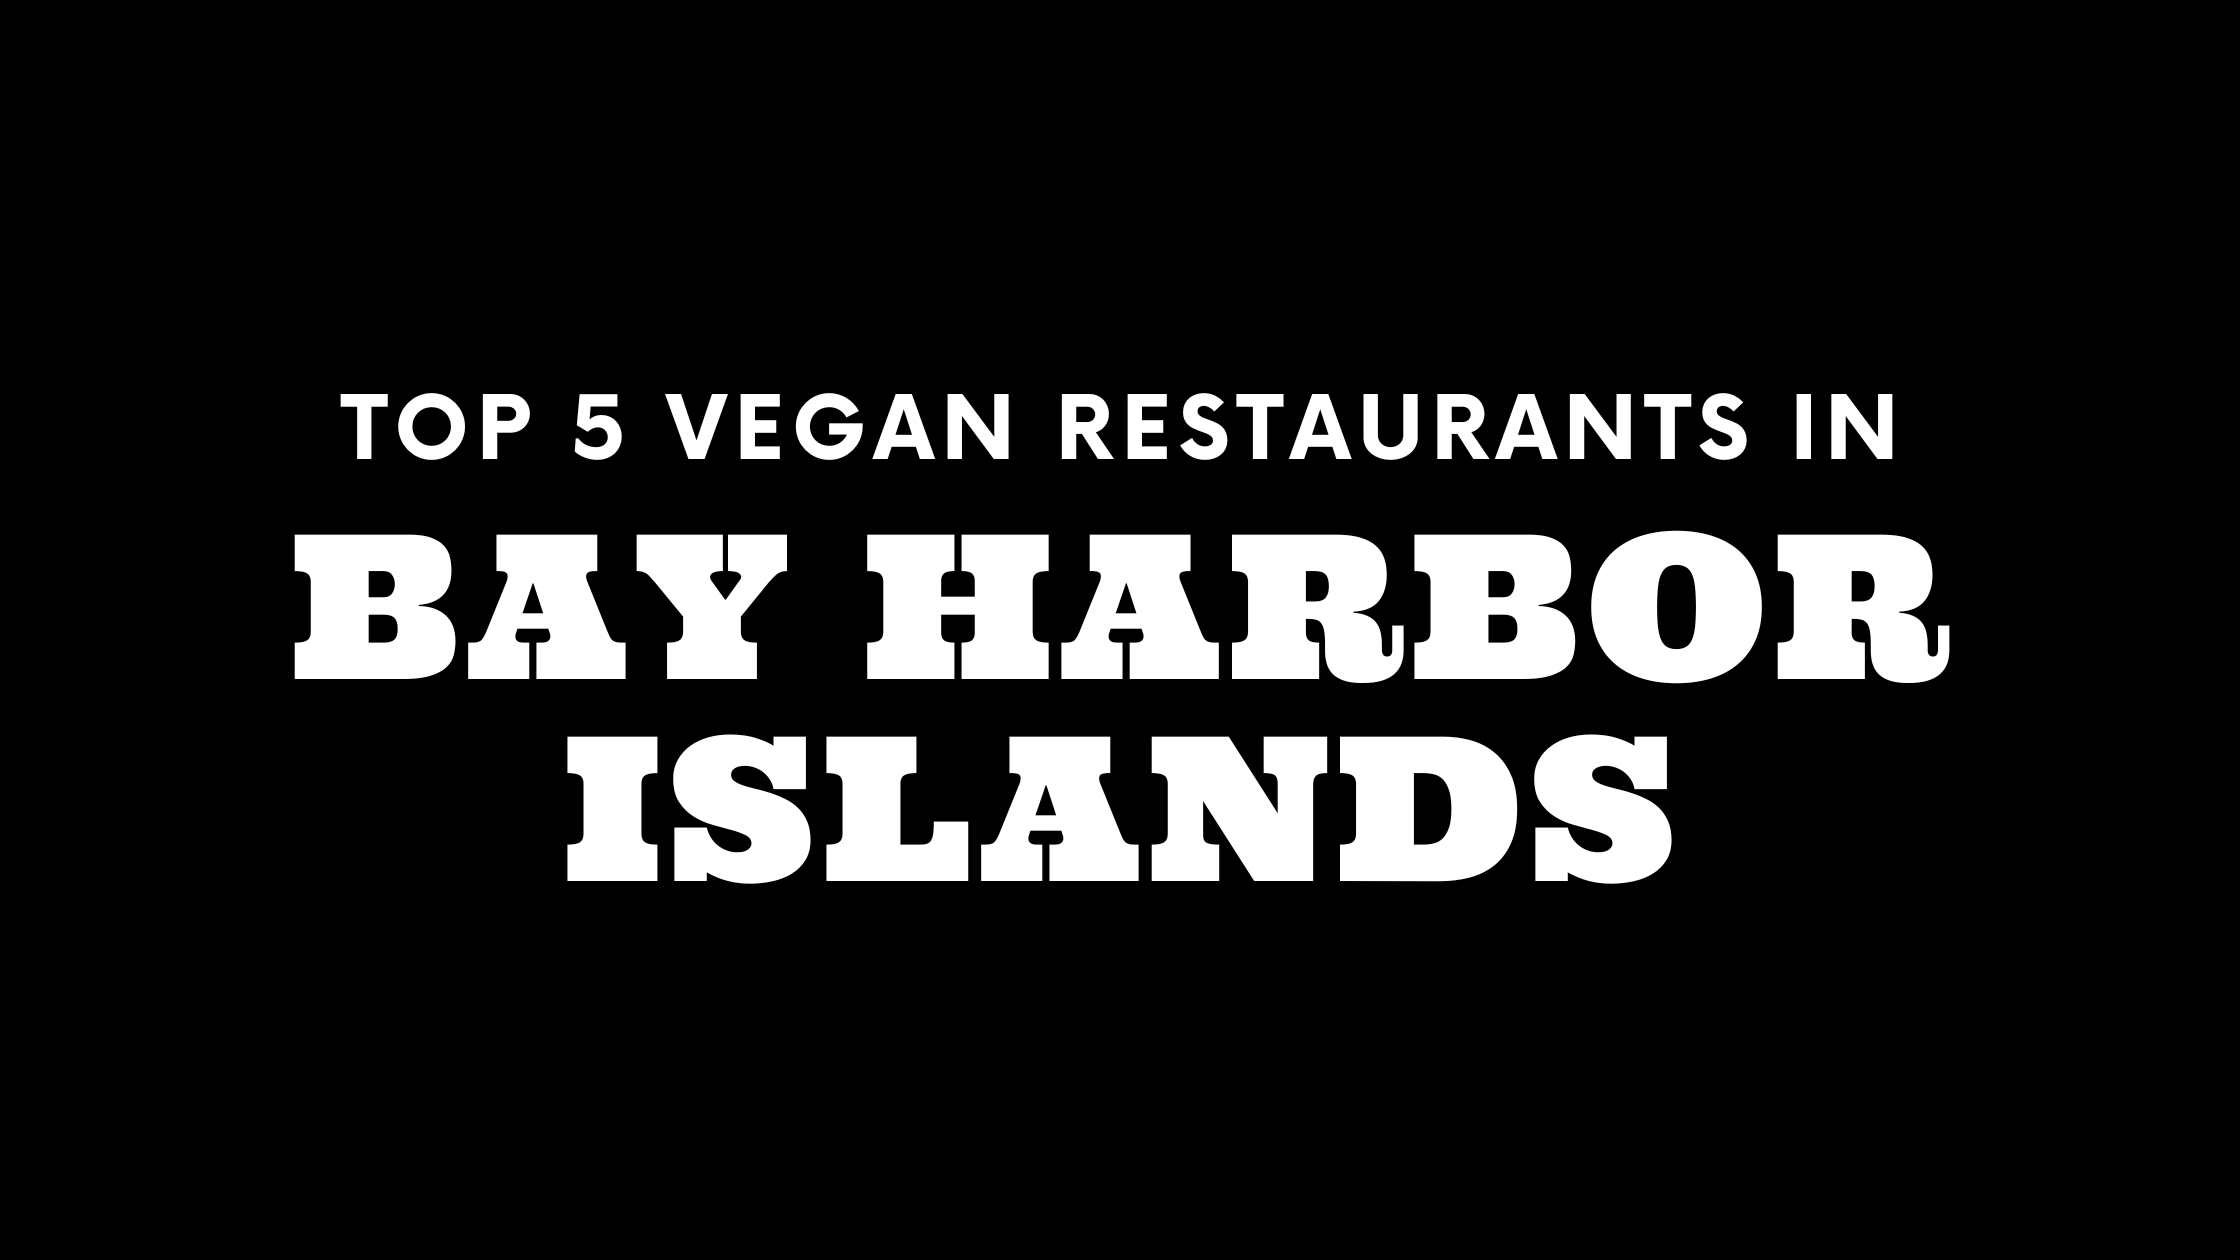 Top 5 Vegan Restaurants in Bay Harbor Islands